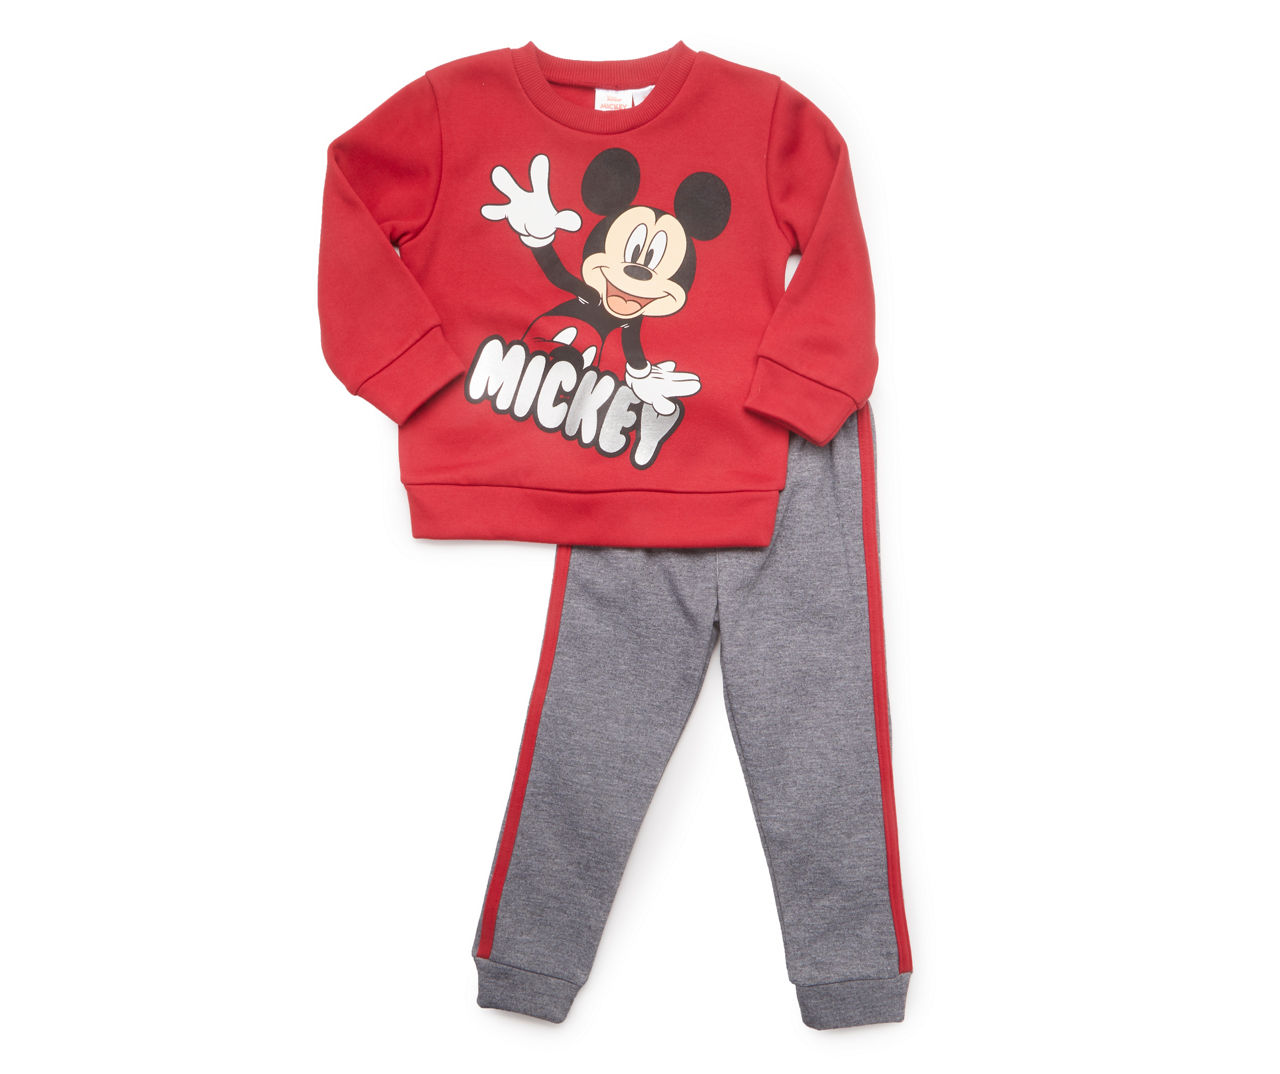 Kids' Size 4 "Mickey" Red Fleece Sweatshirt & Gray Side-Stripe Sweatpants